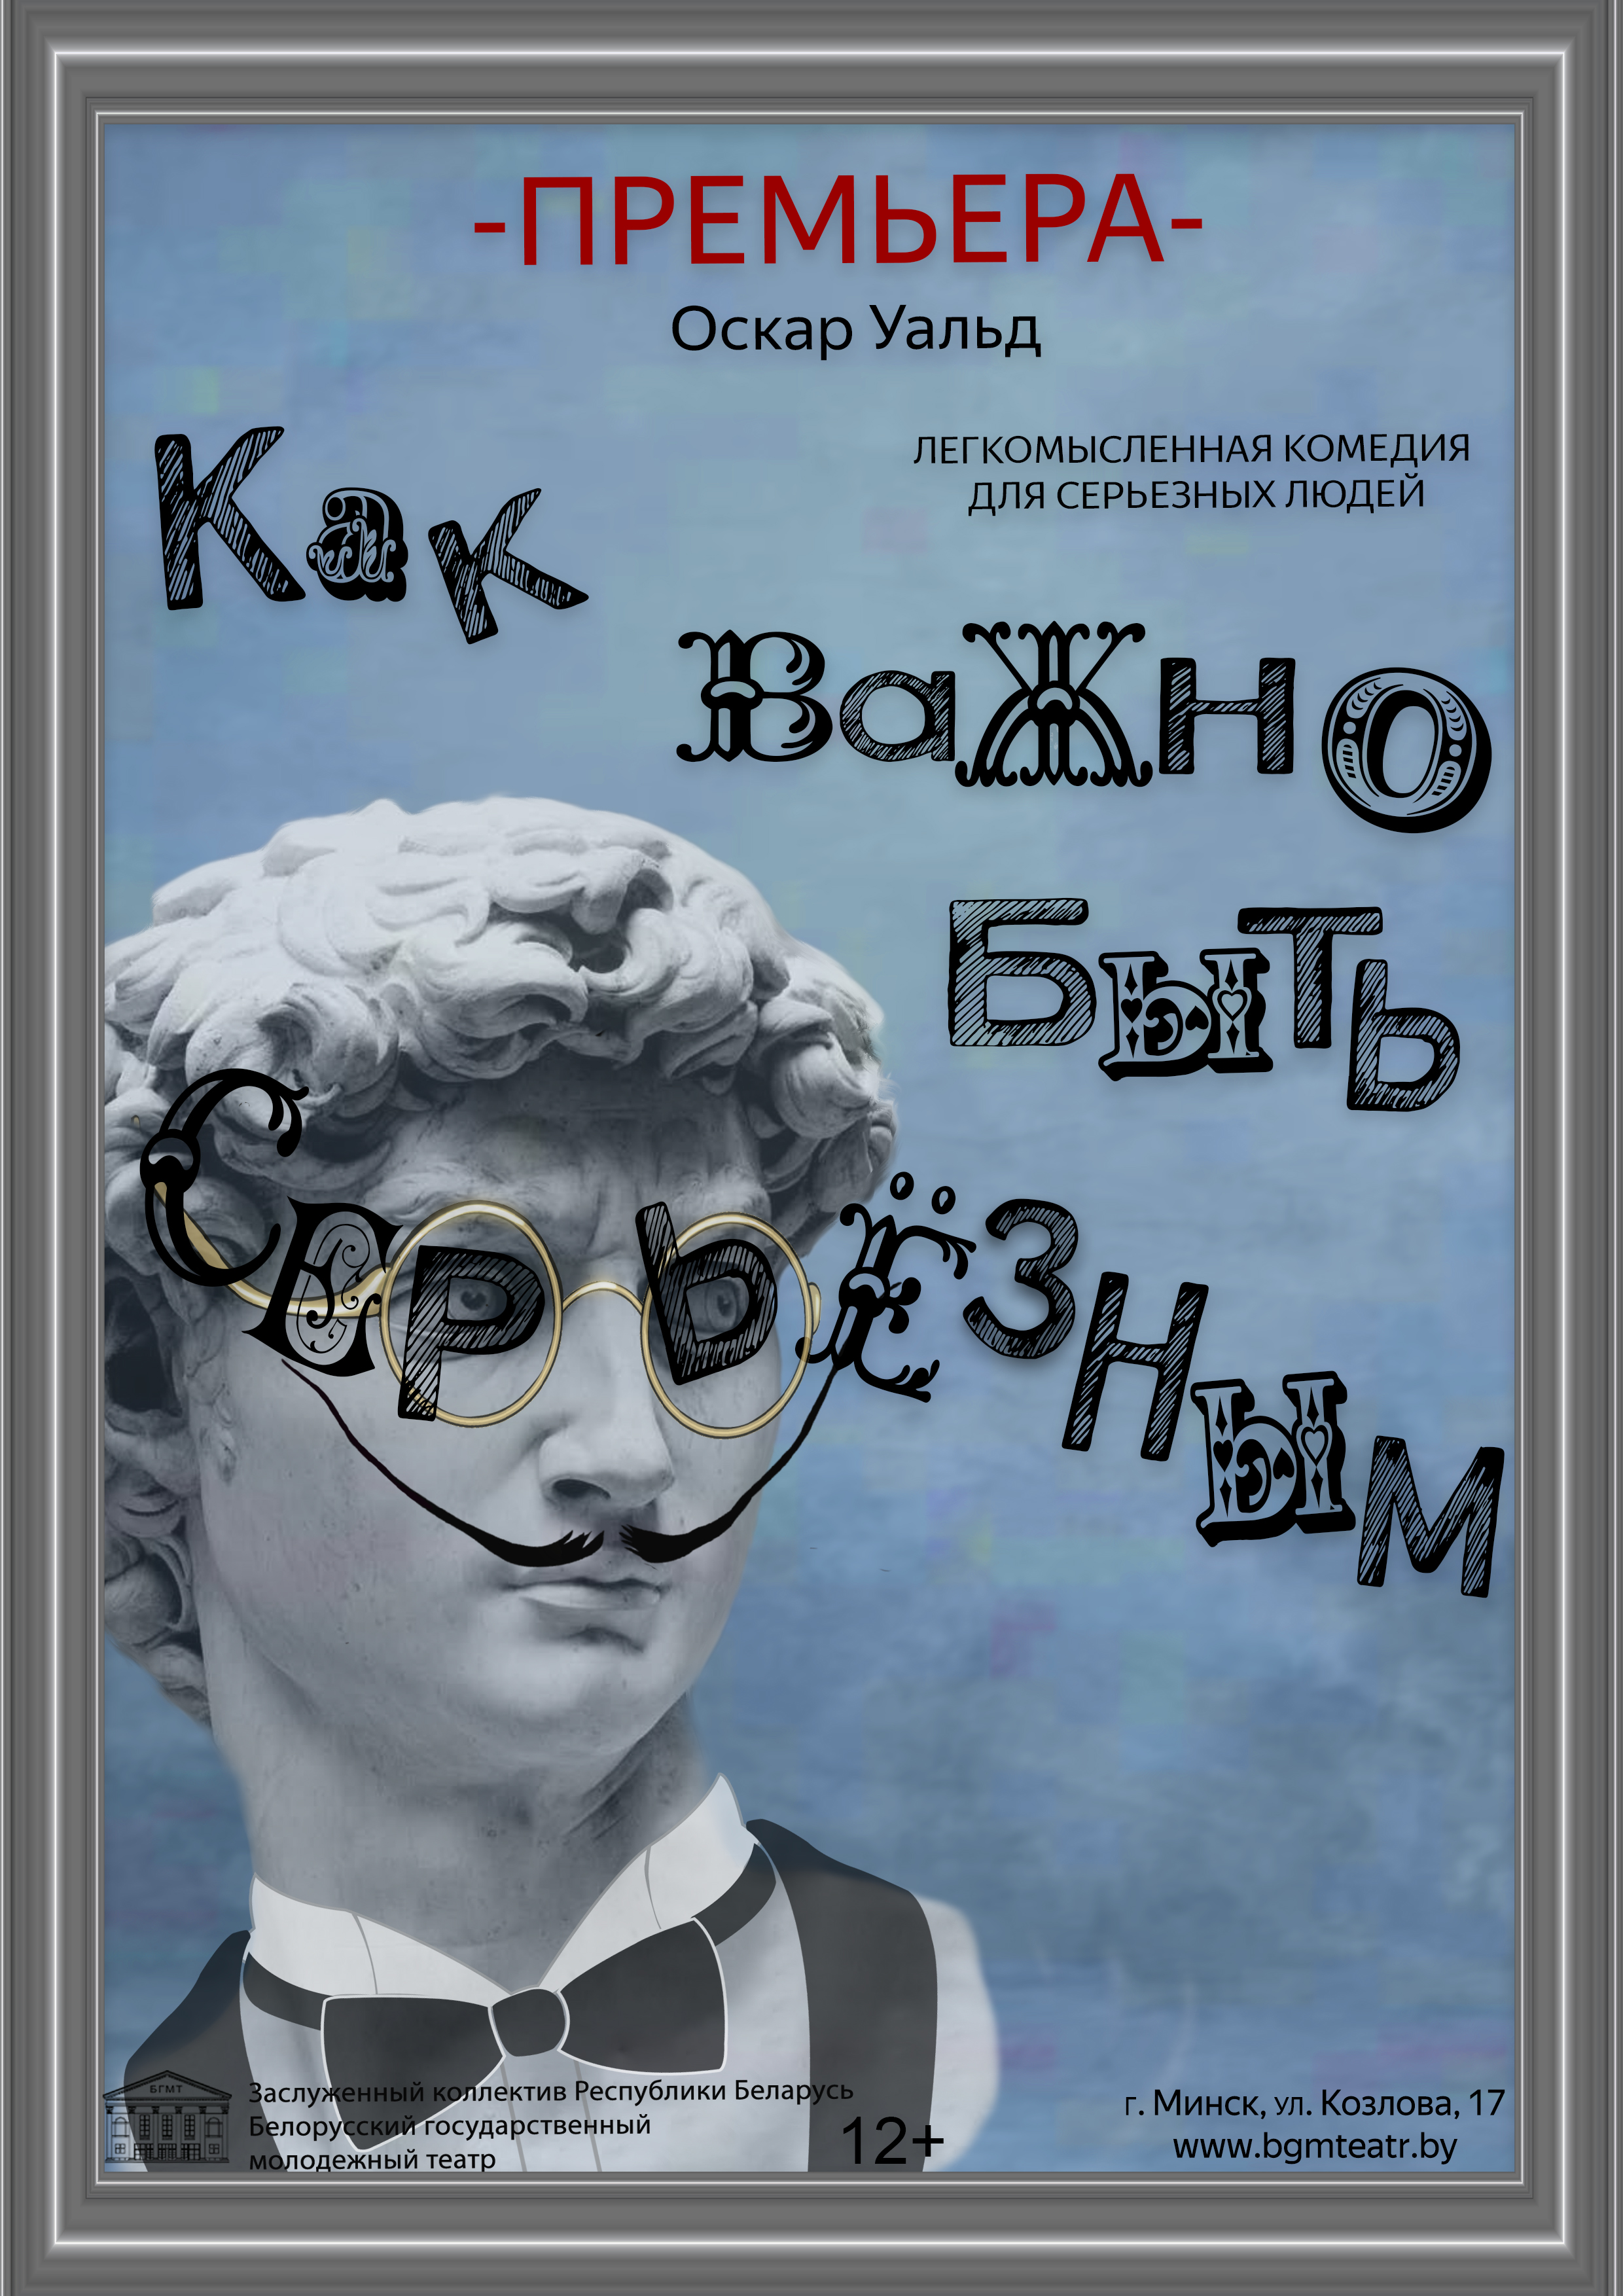 Фото - постер к Спектакли Как важно быть серьезным (в БГМТ) на kudapoiti.by